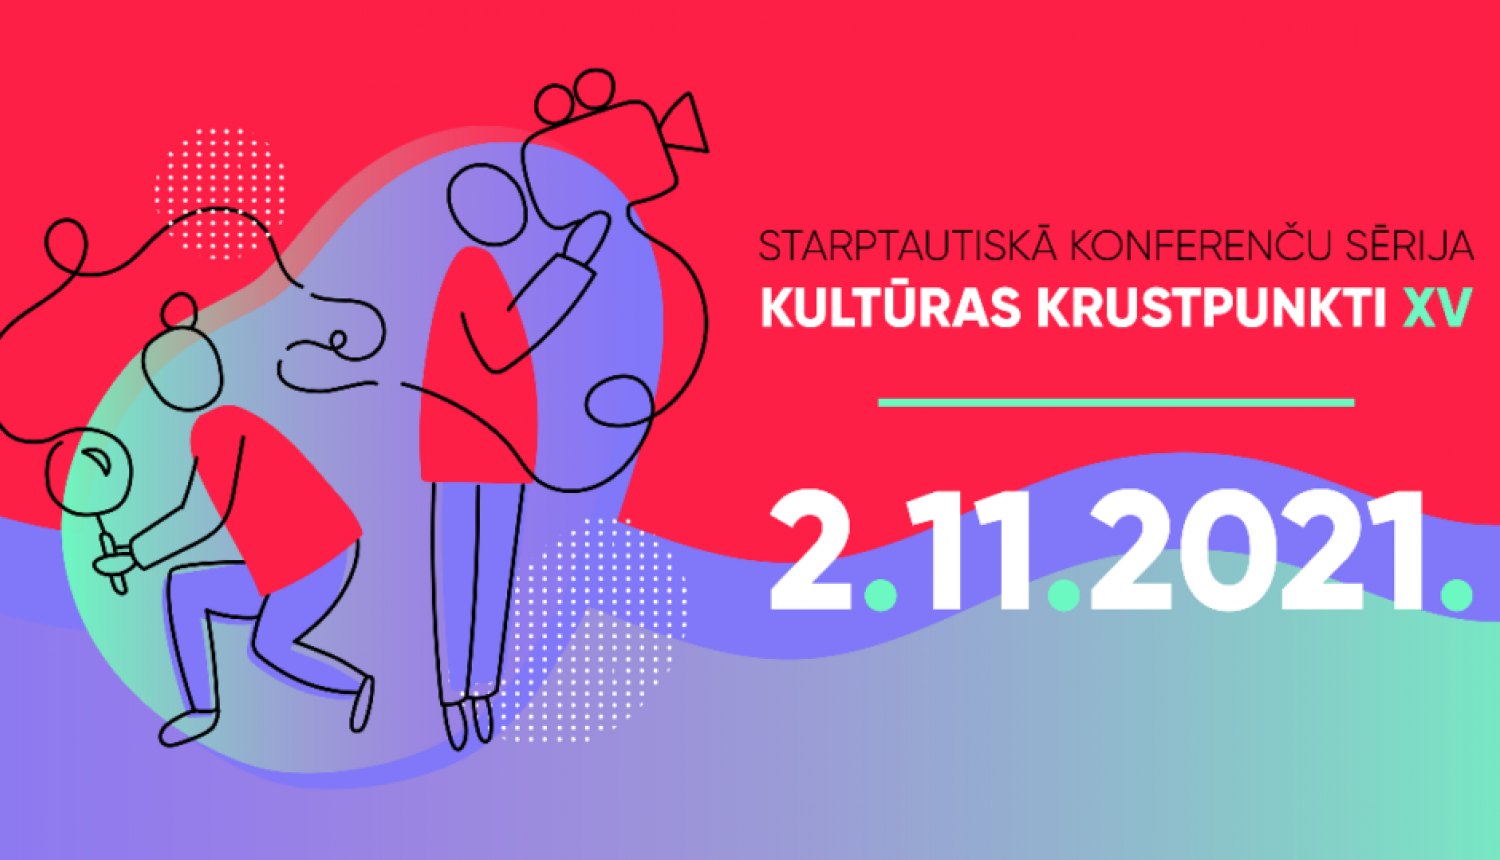 Latvijas Kultūras akadēmija 2. novembrī aicina uz starptautiskās konferenču sērijas “Kultūras Krustpunkti XV” konferenci “Latvijas Kultūras akadēmijas pētnieciskais profils 2021: temati, jautājumi un atbildes”